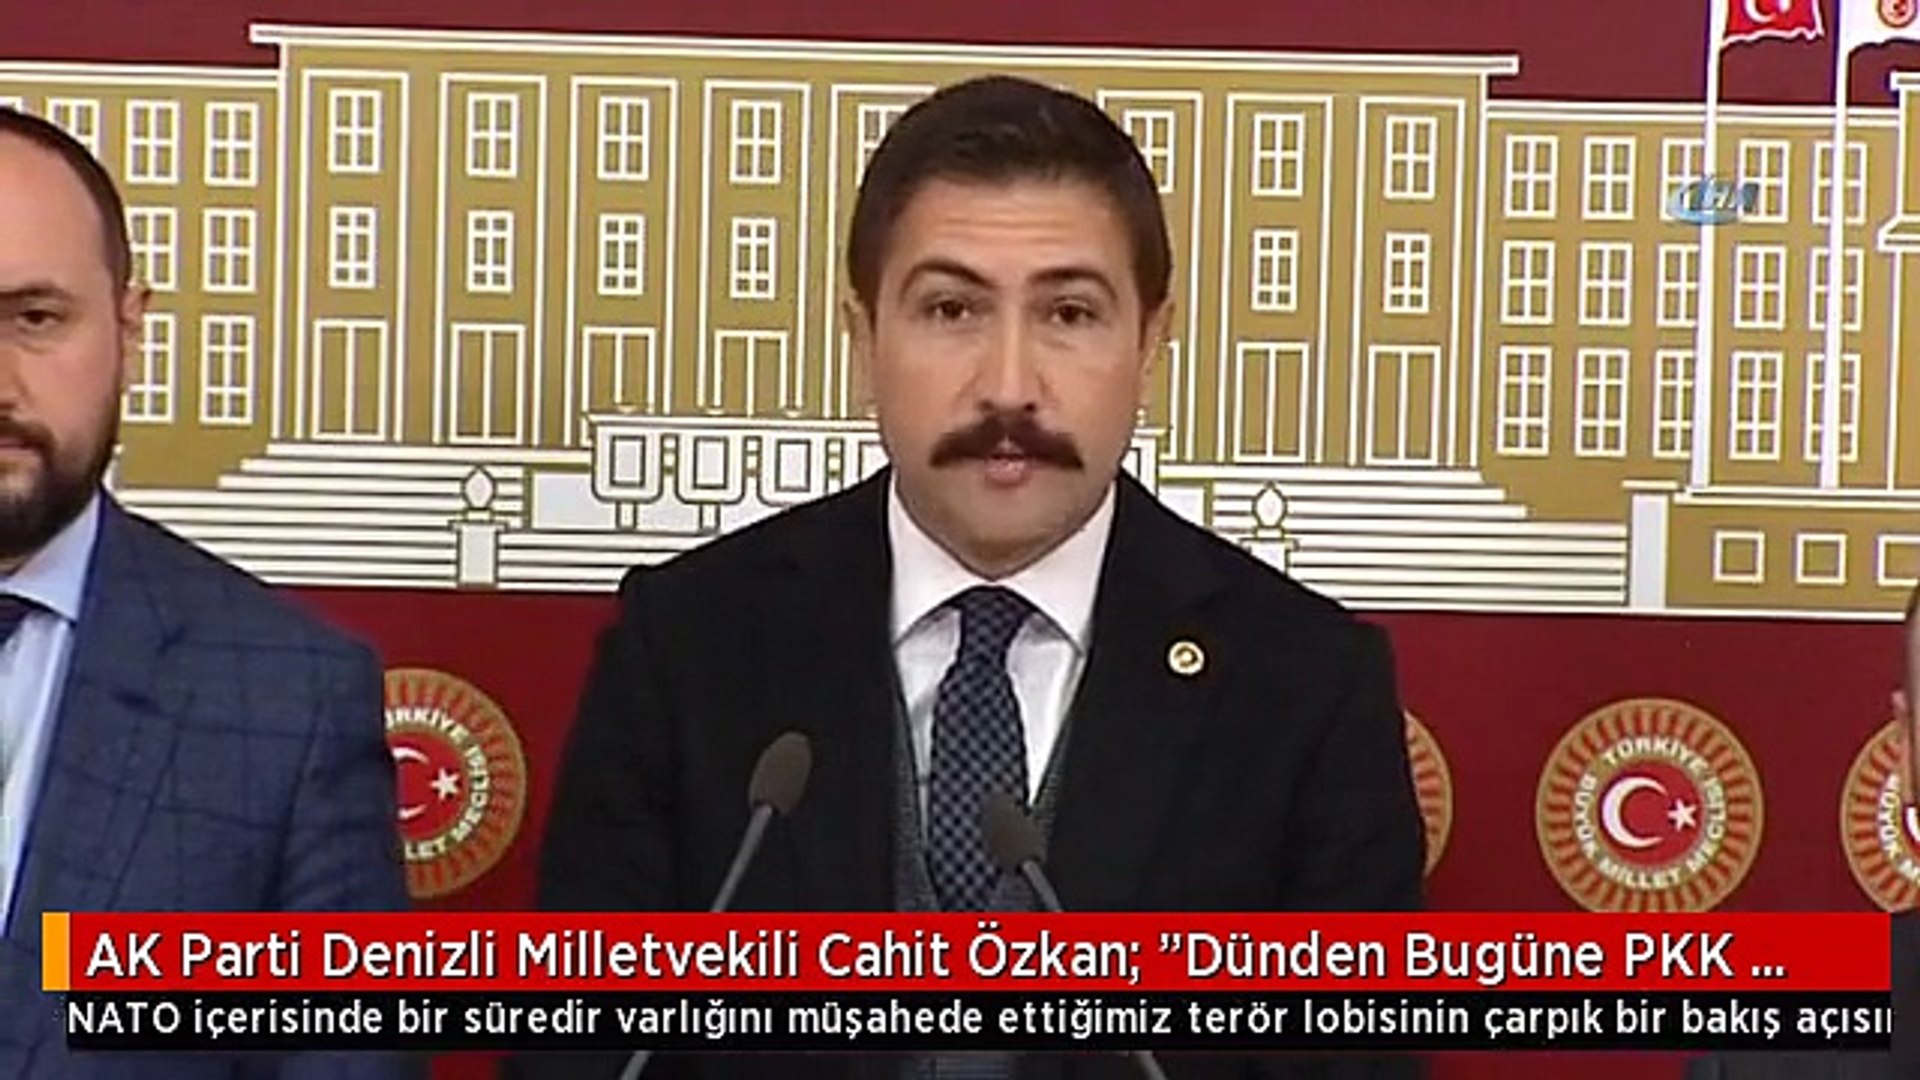 AK Parti Denizli Milletvekili Cahit Özkan: "Dünden Bugüne PKK Terör  Örgütünün Çadırlarının Almanya,...